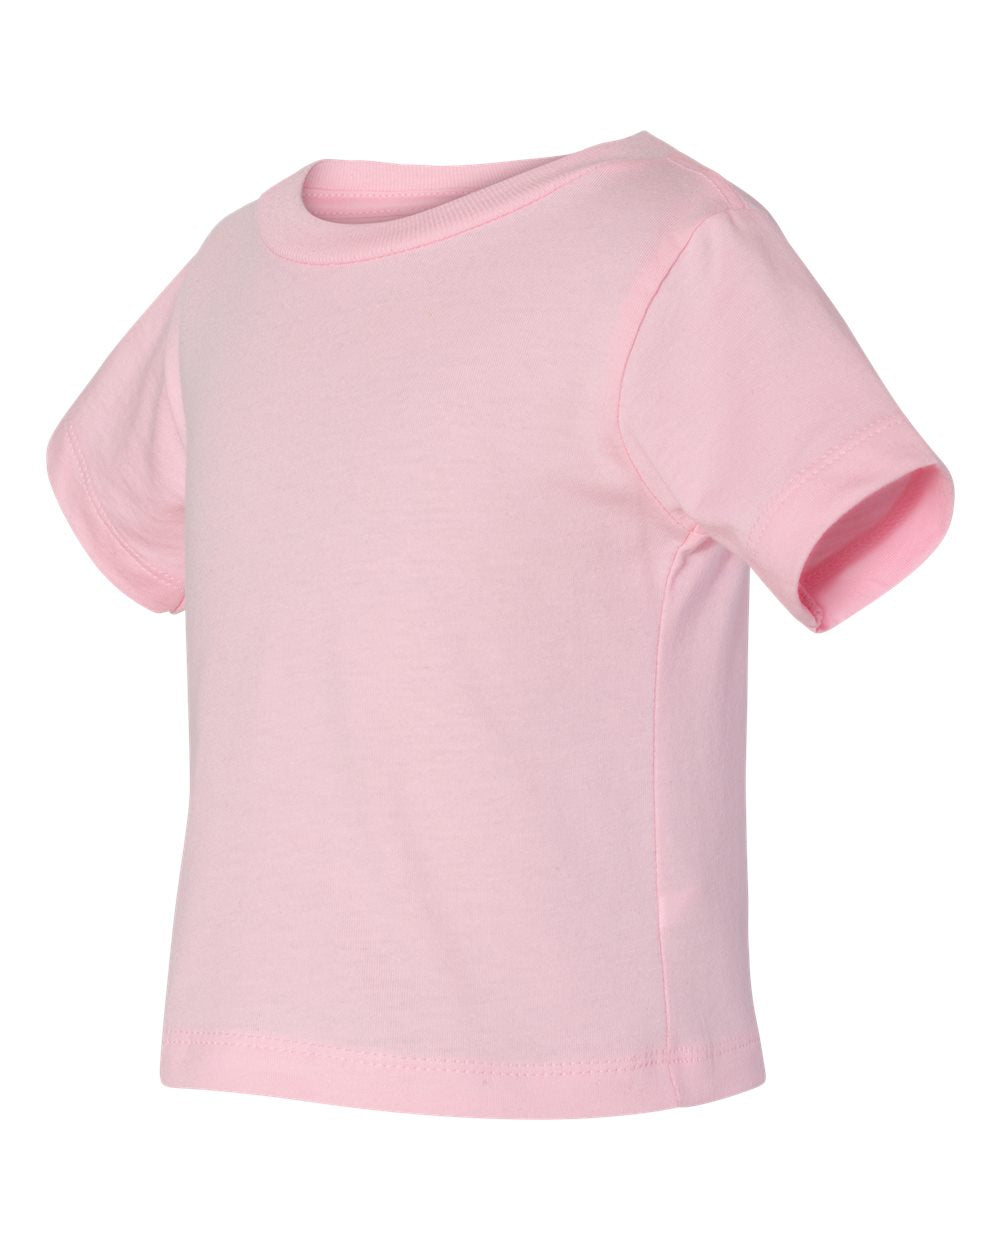 bella canvas infant short sleeve pink